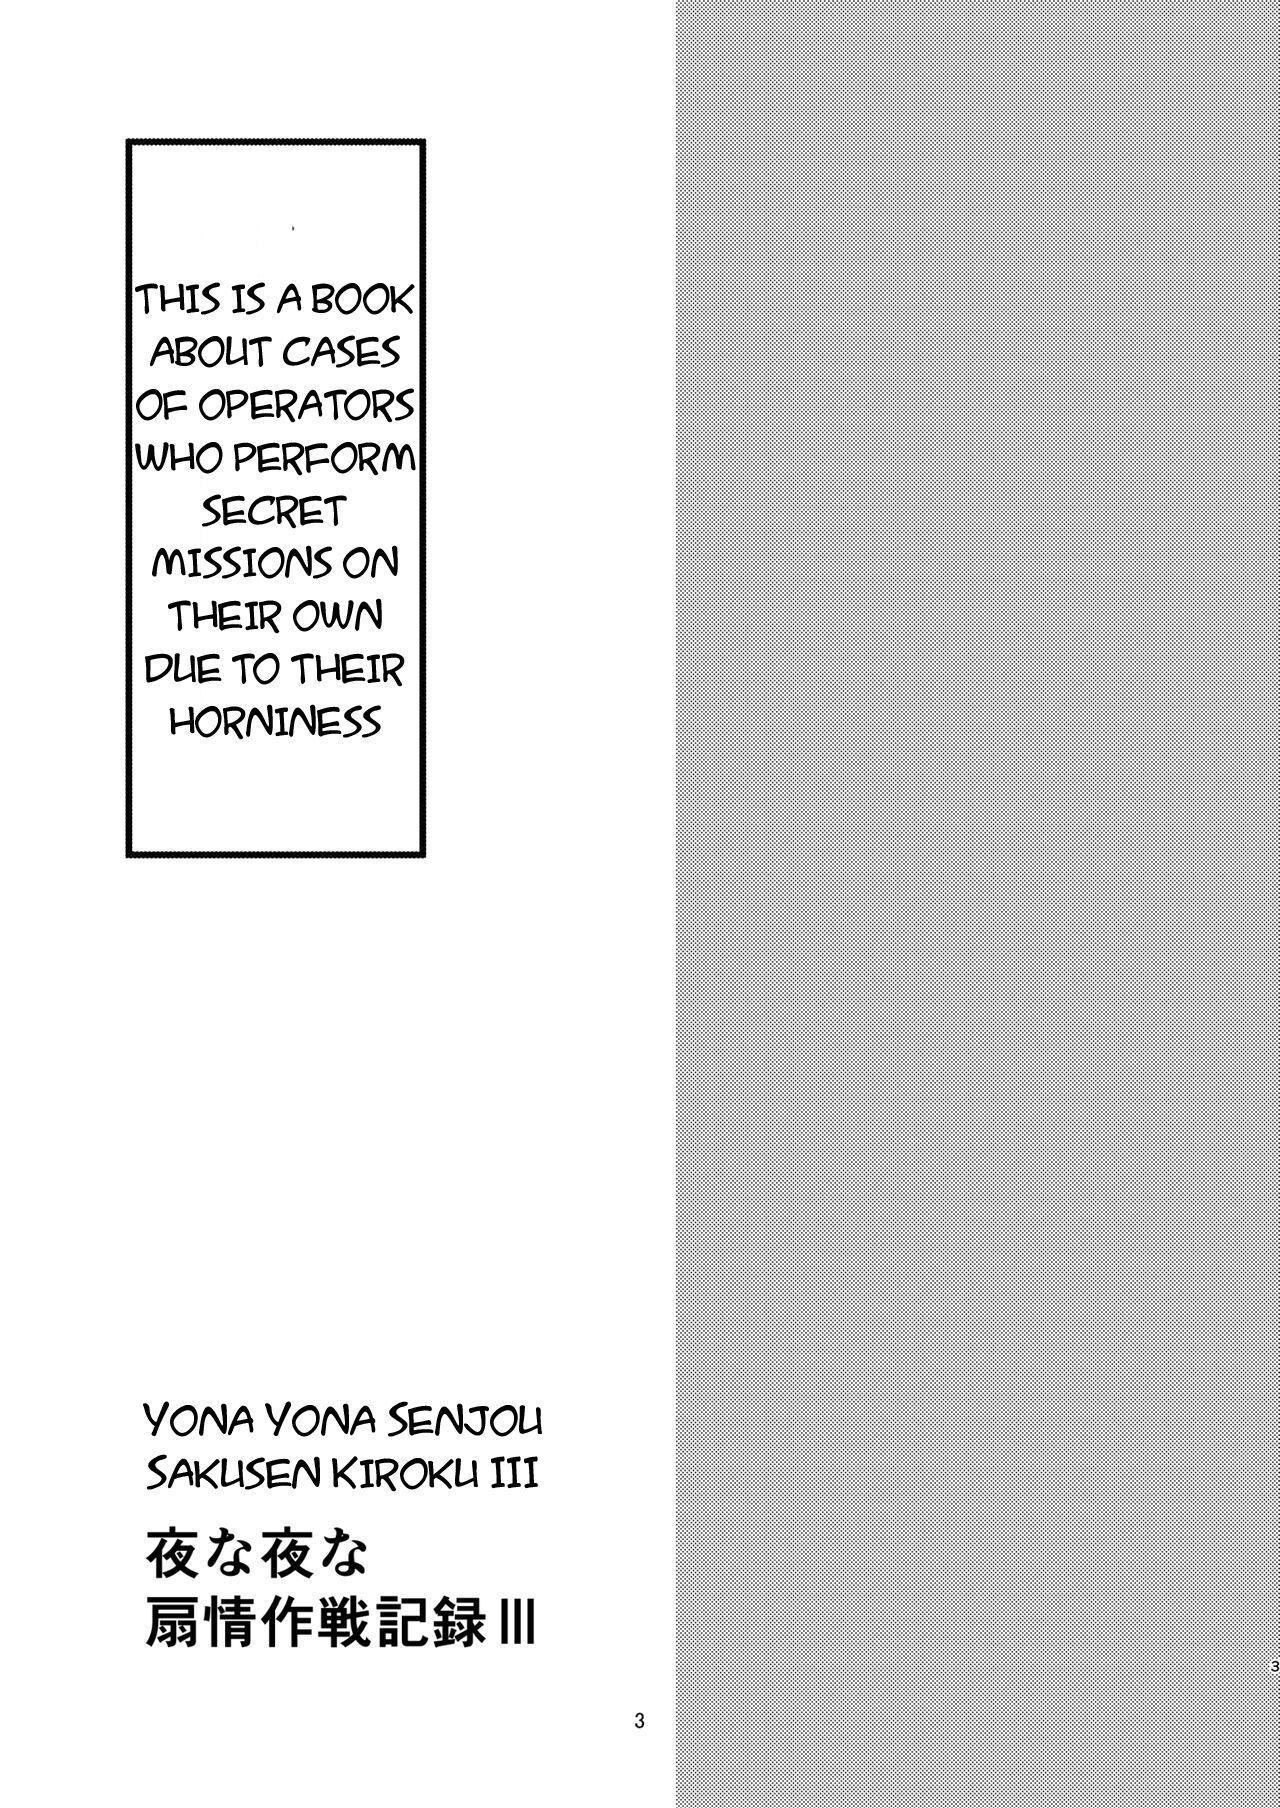 Gloryhole Yona Yona Senjou Sakusen Kiroku III - Arknights Gostosa - Page 3